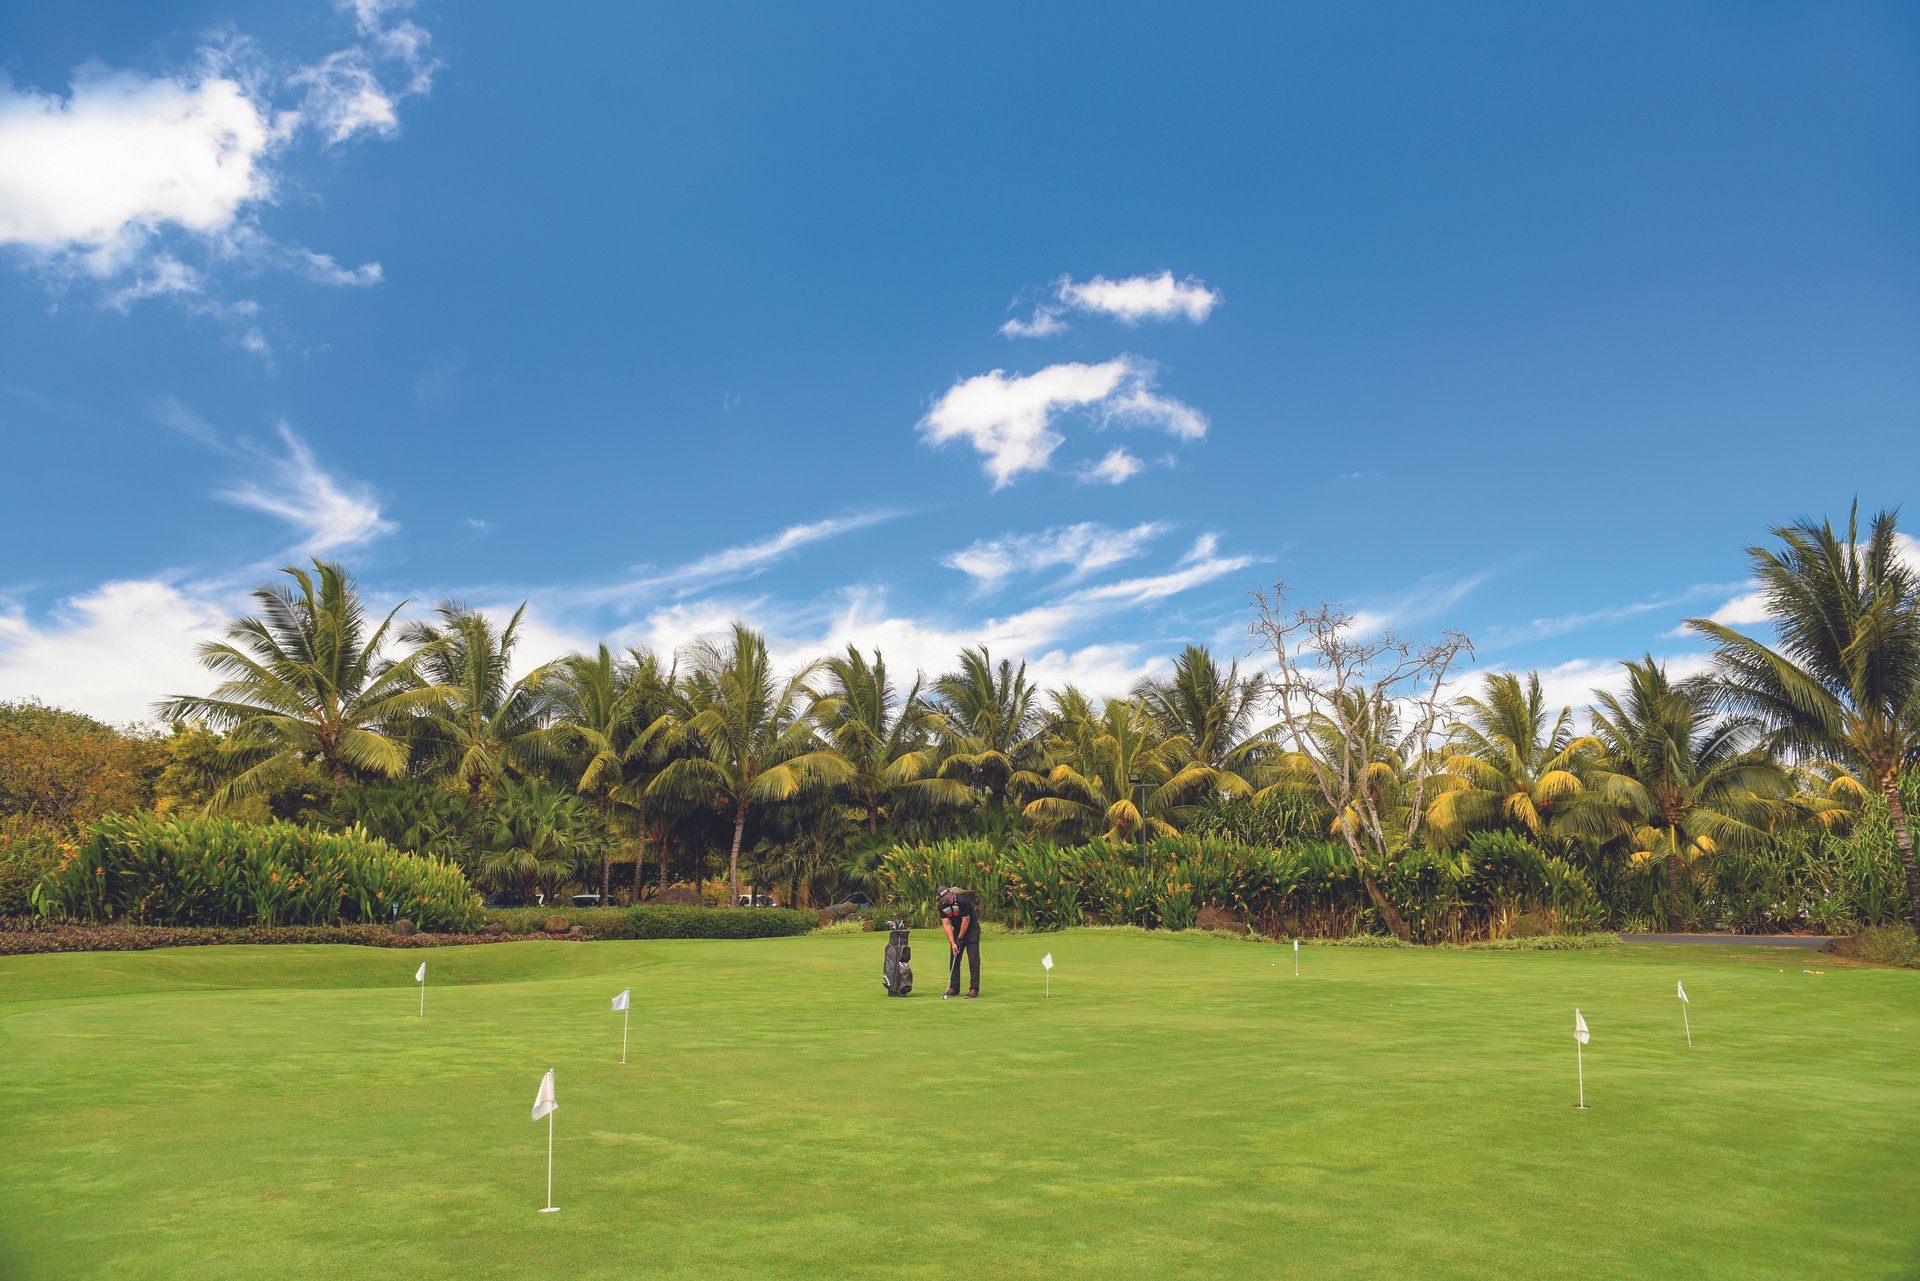 Привілейований доступ до двох полів для гольфу на 18 лунок розміром 72: Paradis Golf Club і Mont Choisy Le Golf.